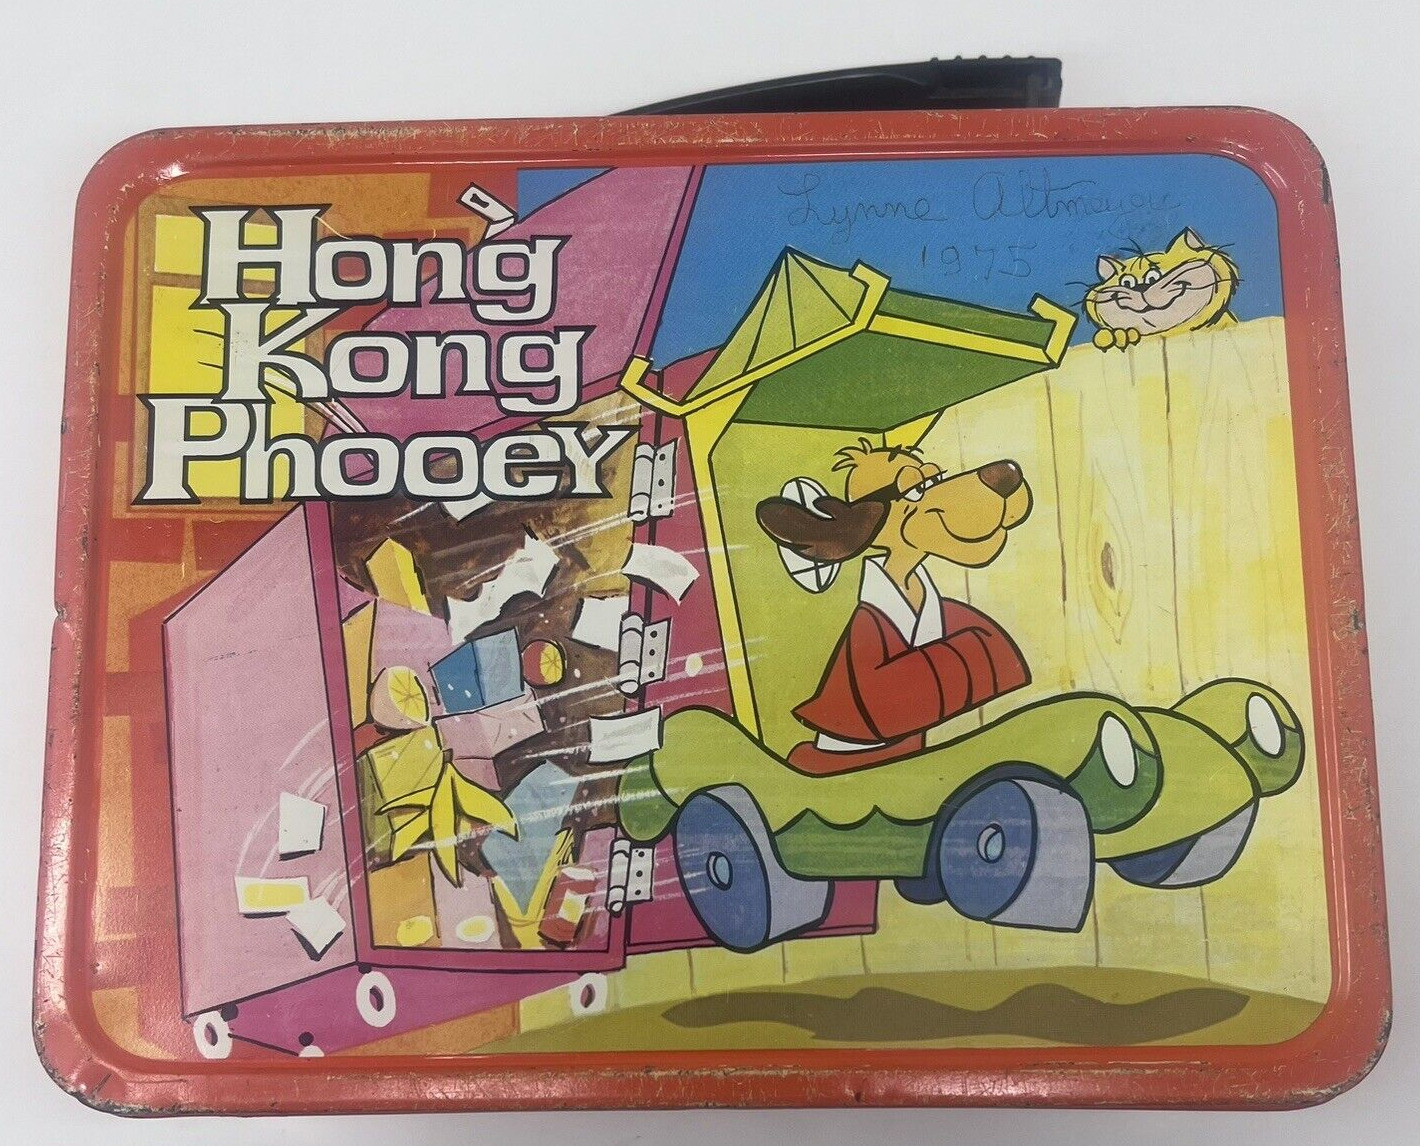 Vintage 1975 Hong Kong Phooey Metal Lunch Box